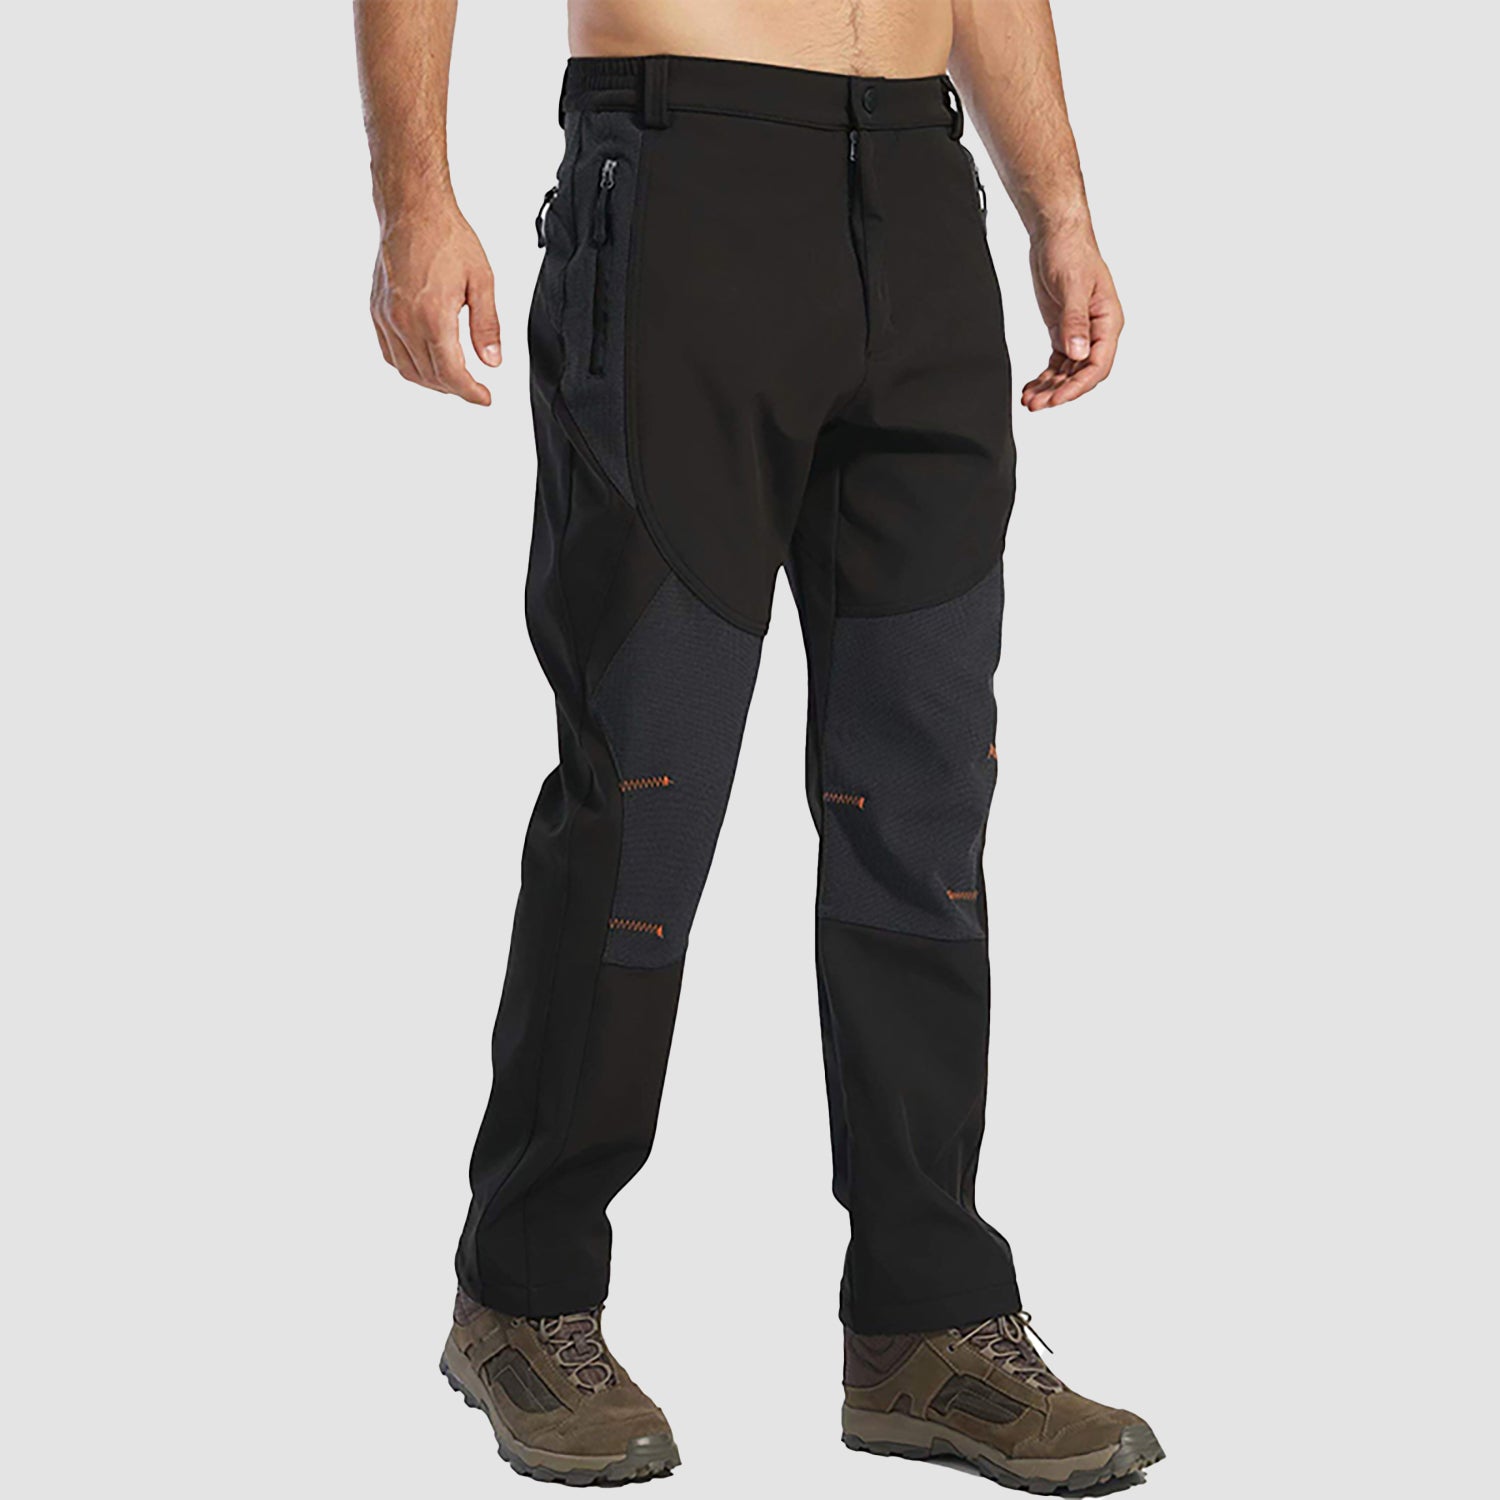 Men Soft Shell Waterproof Hiking Pants Cargo Outdoor Trekking Fishing Climbing Trousers for Winter